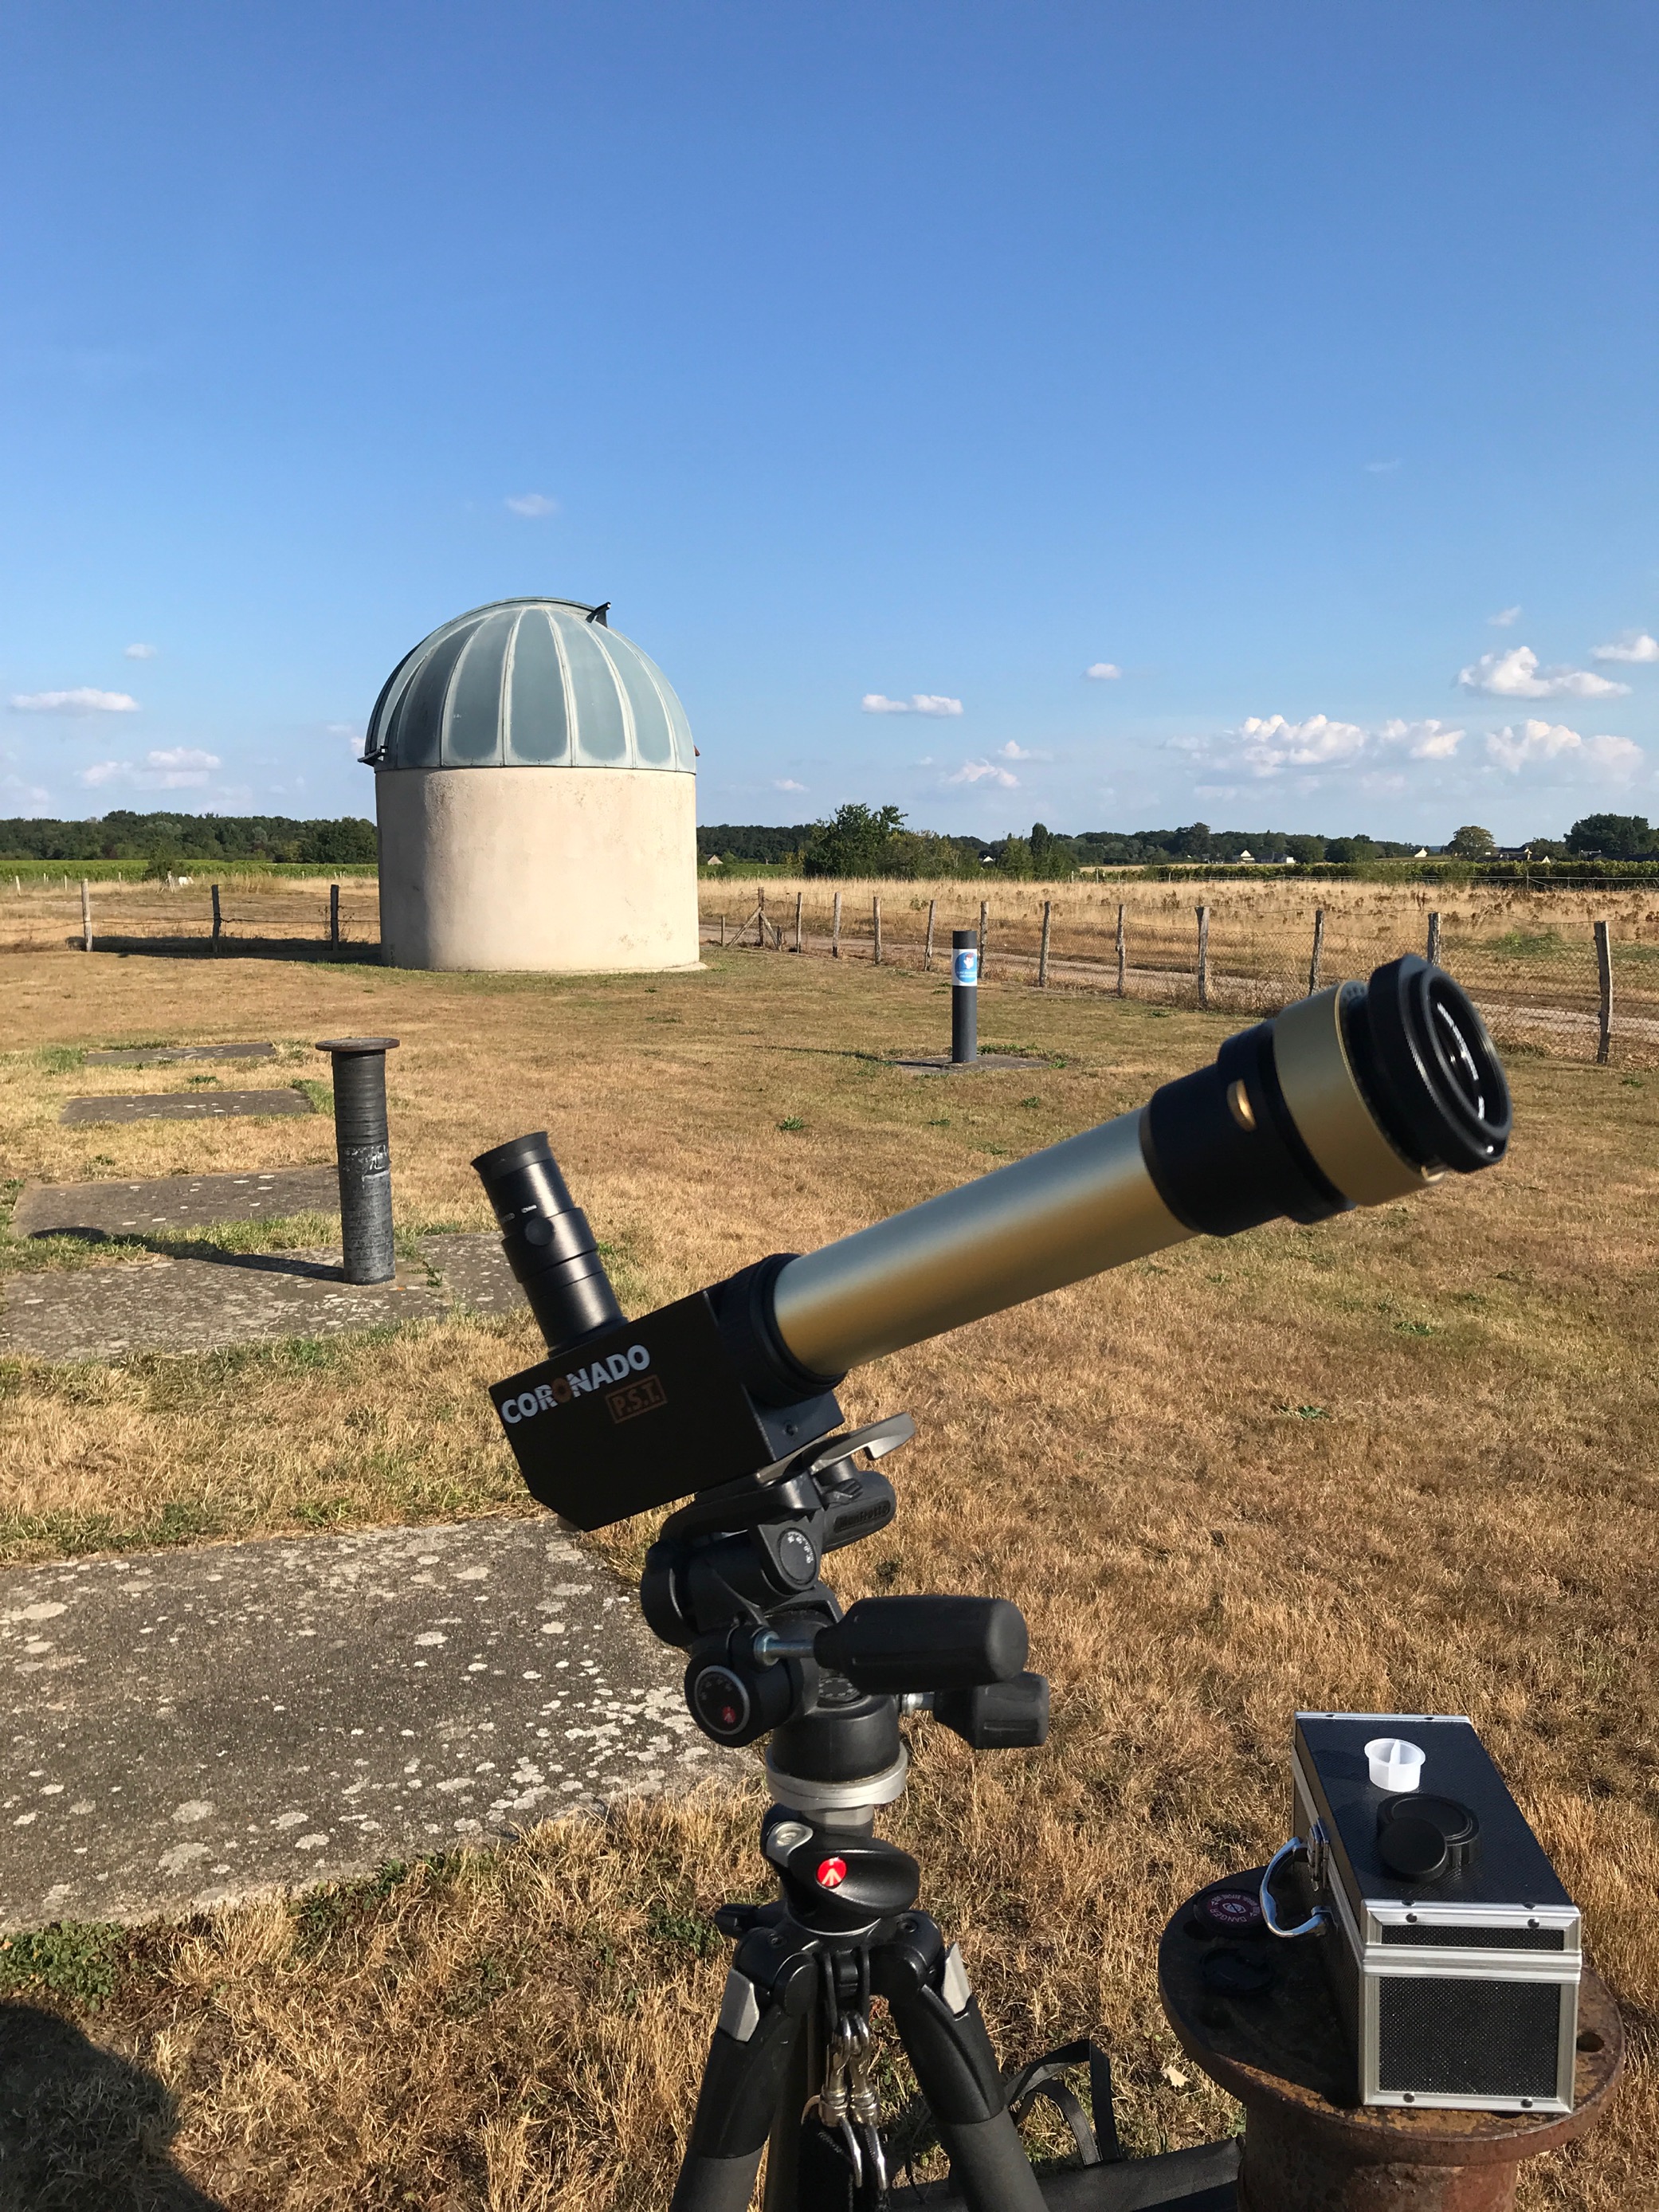 JOURNÉES DU PATRIMOINE – OBSERVATOIRE ASTRONOMIQUE DE ST-SATURNIN-SUR-LOIRE©